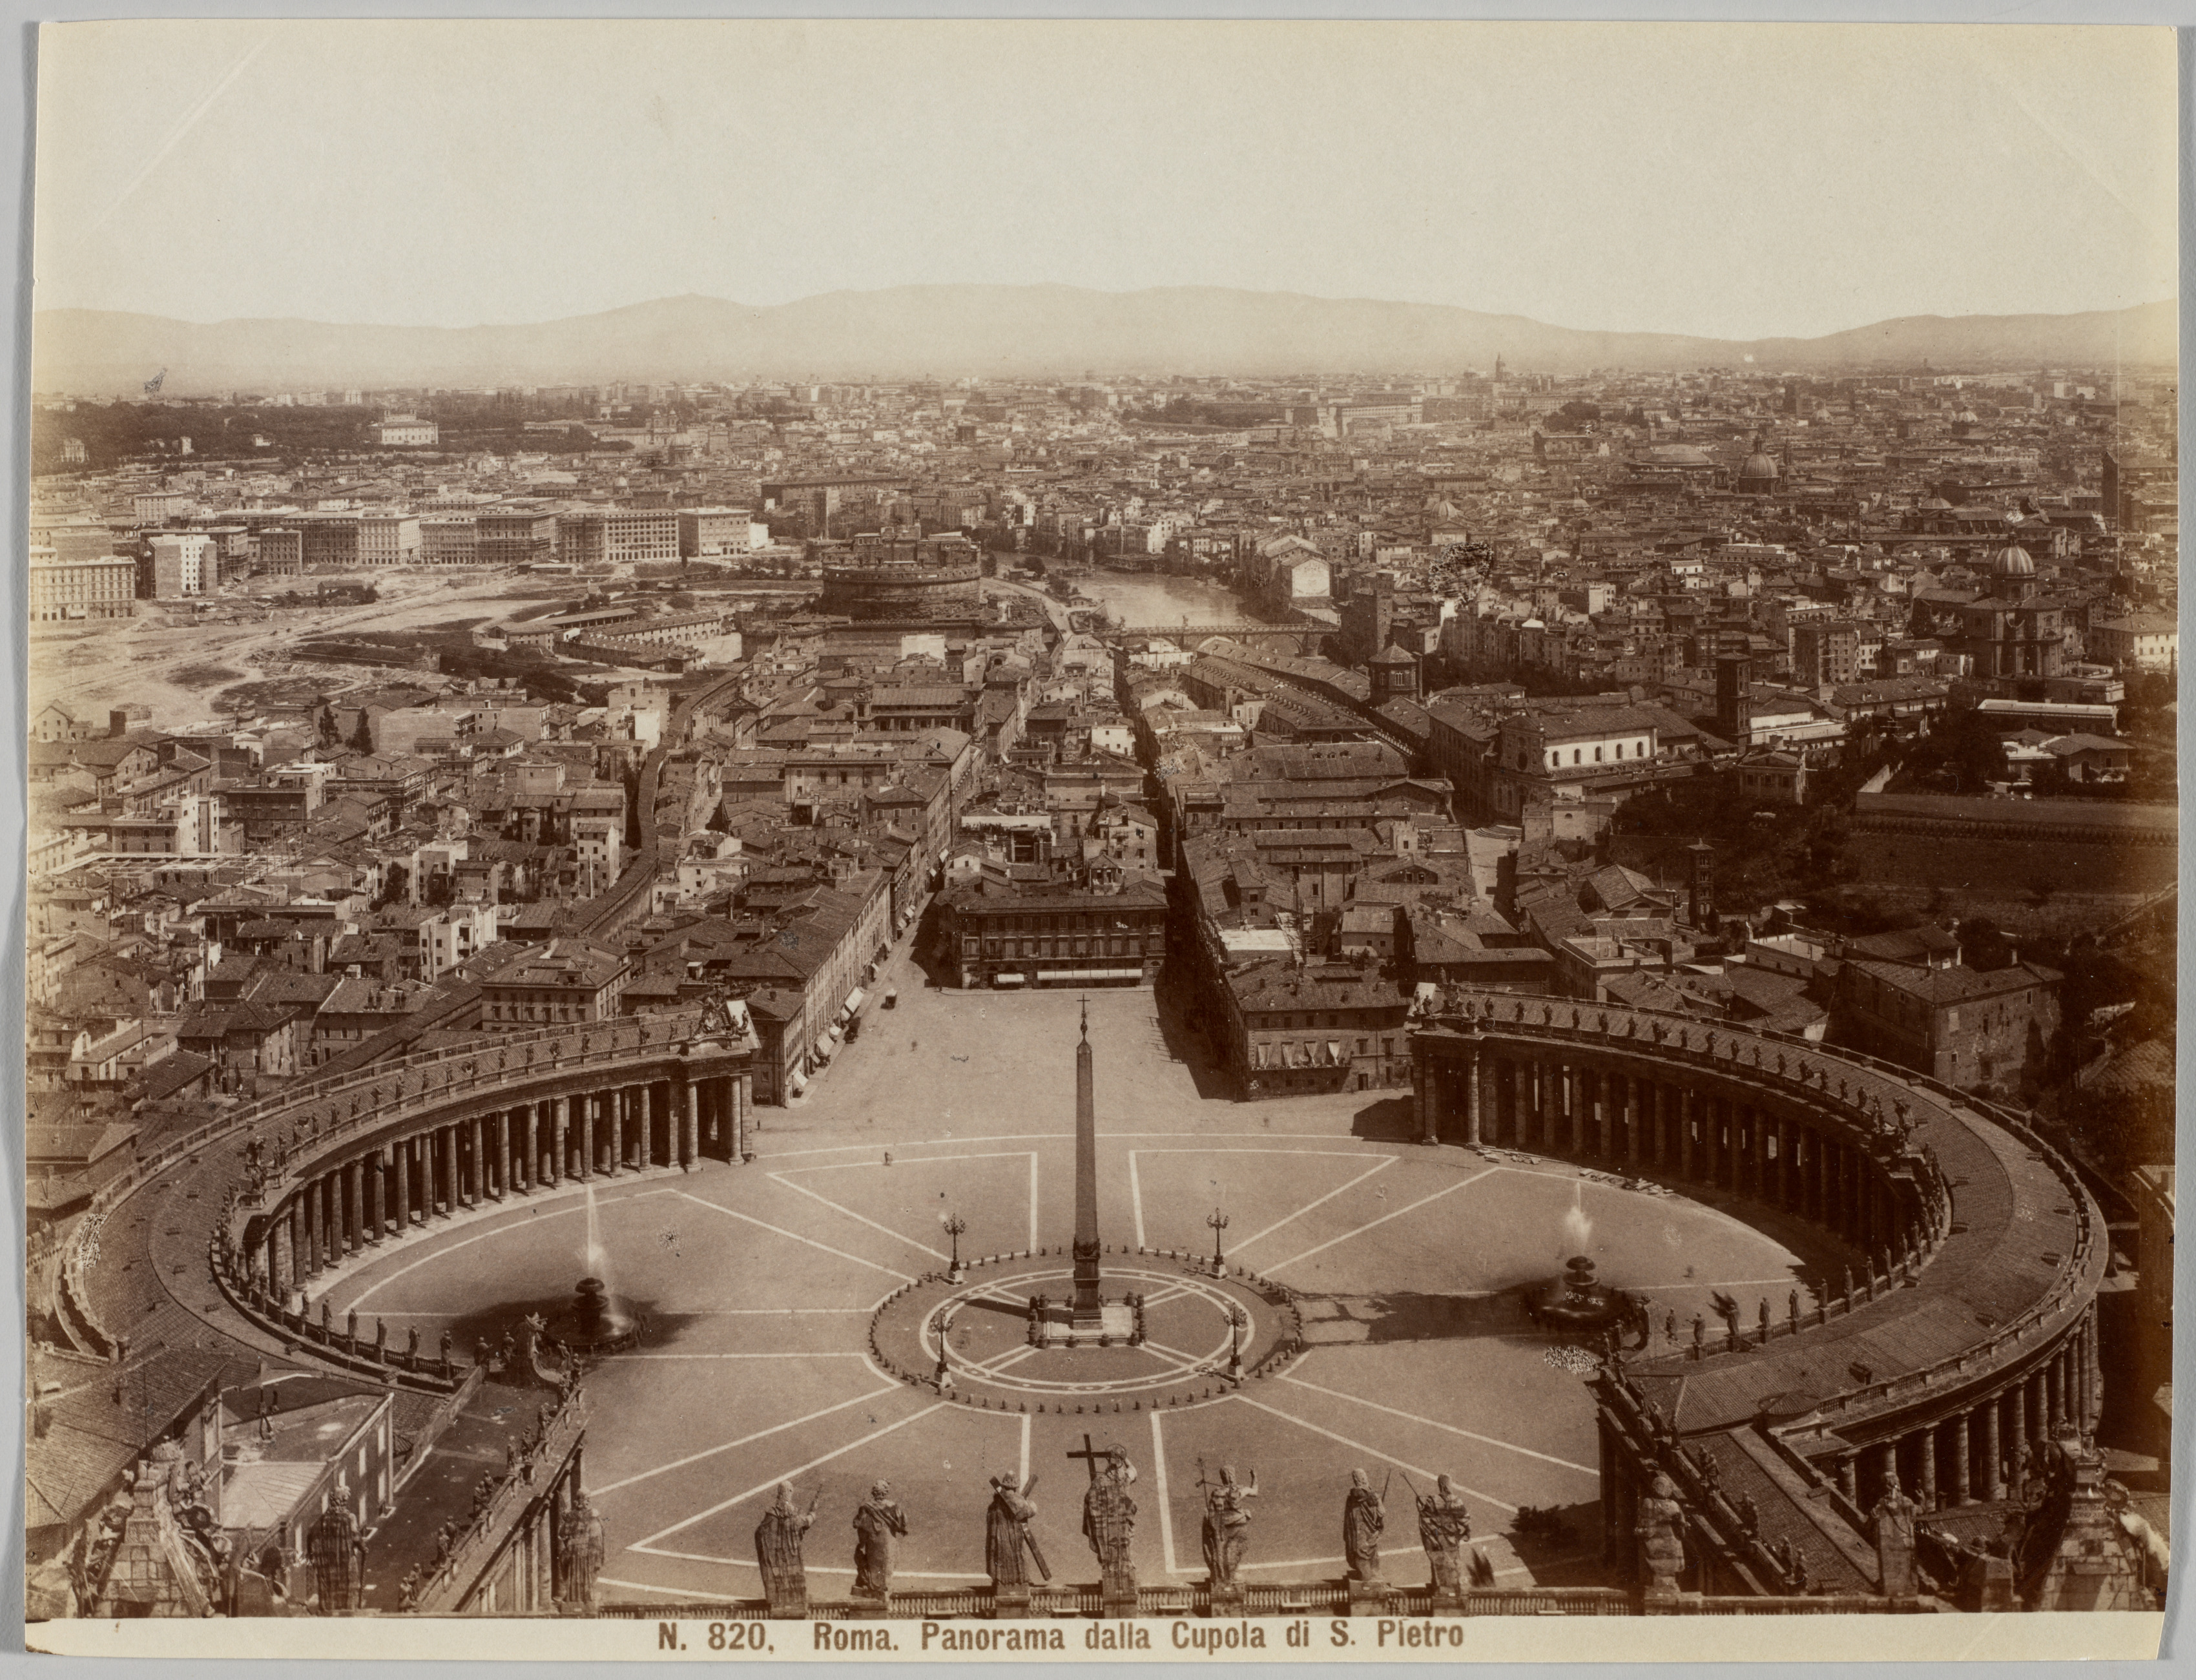 Panorama dalla Cupola di S. Pietro, Rome